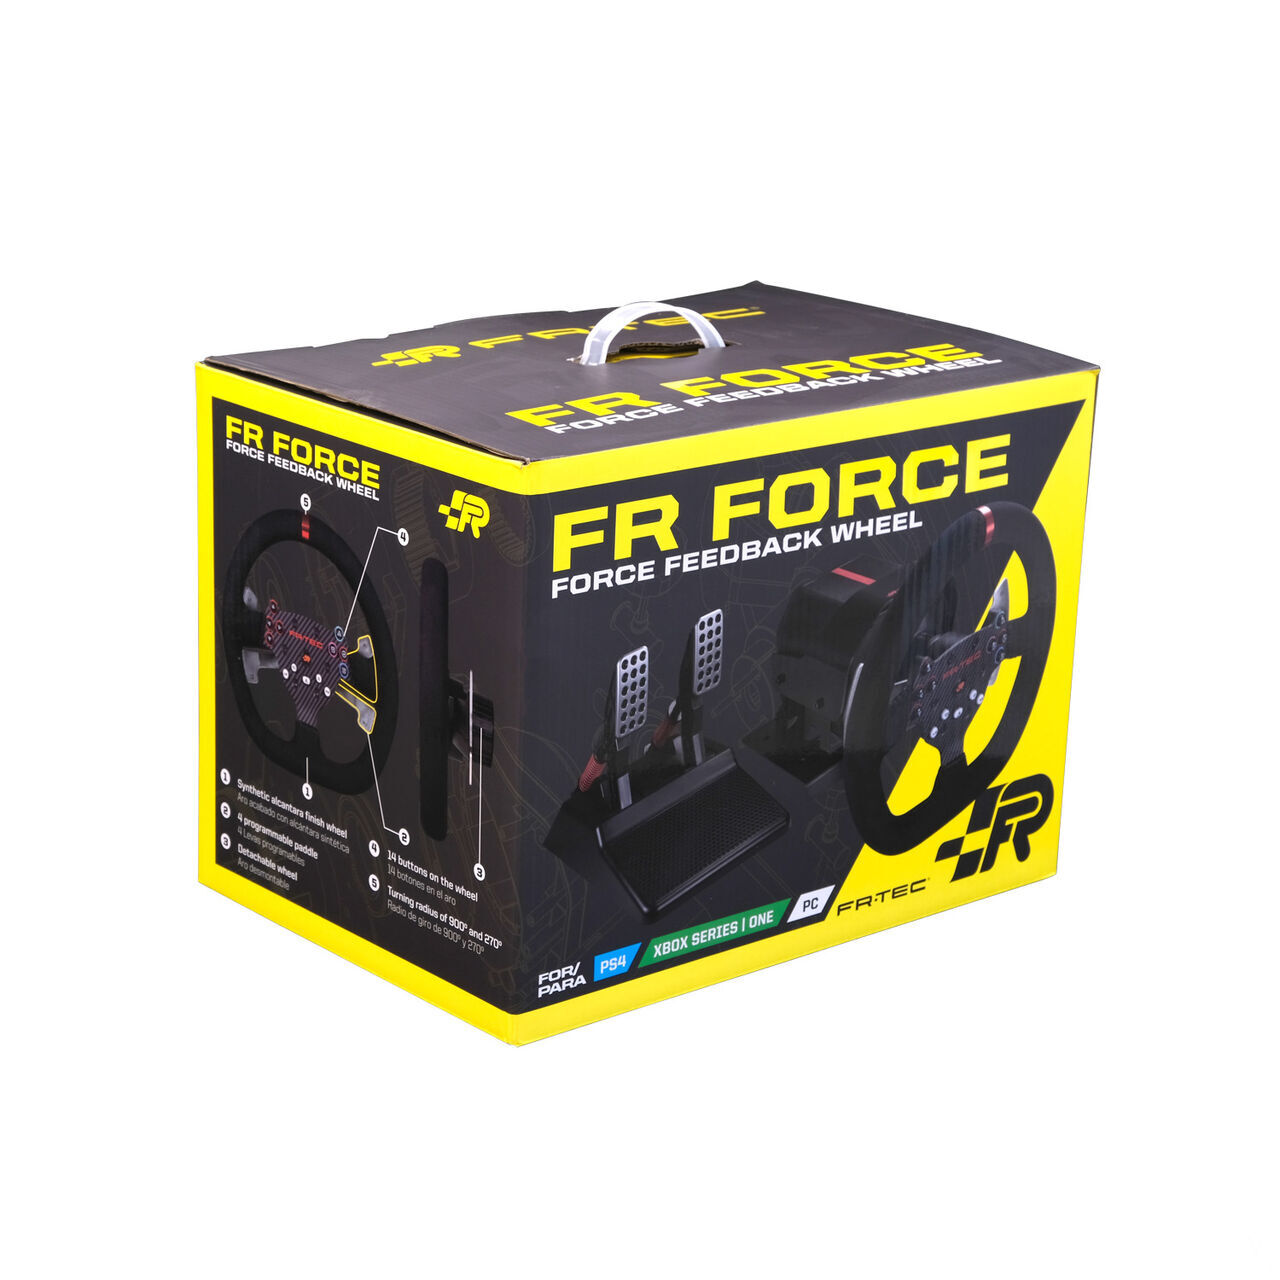 FR-TEC presenta su primer volante con ForceFeedback para consolas y PC, el FR-Force